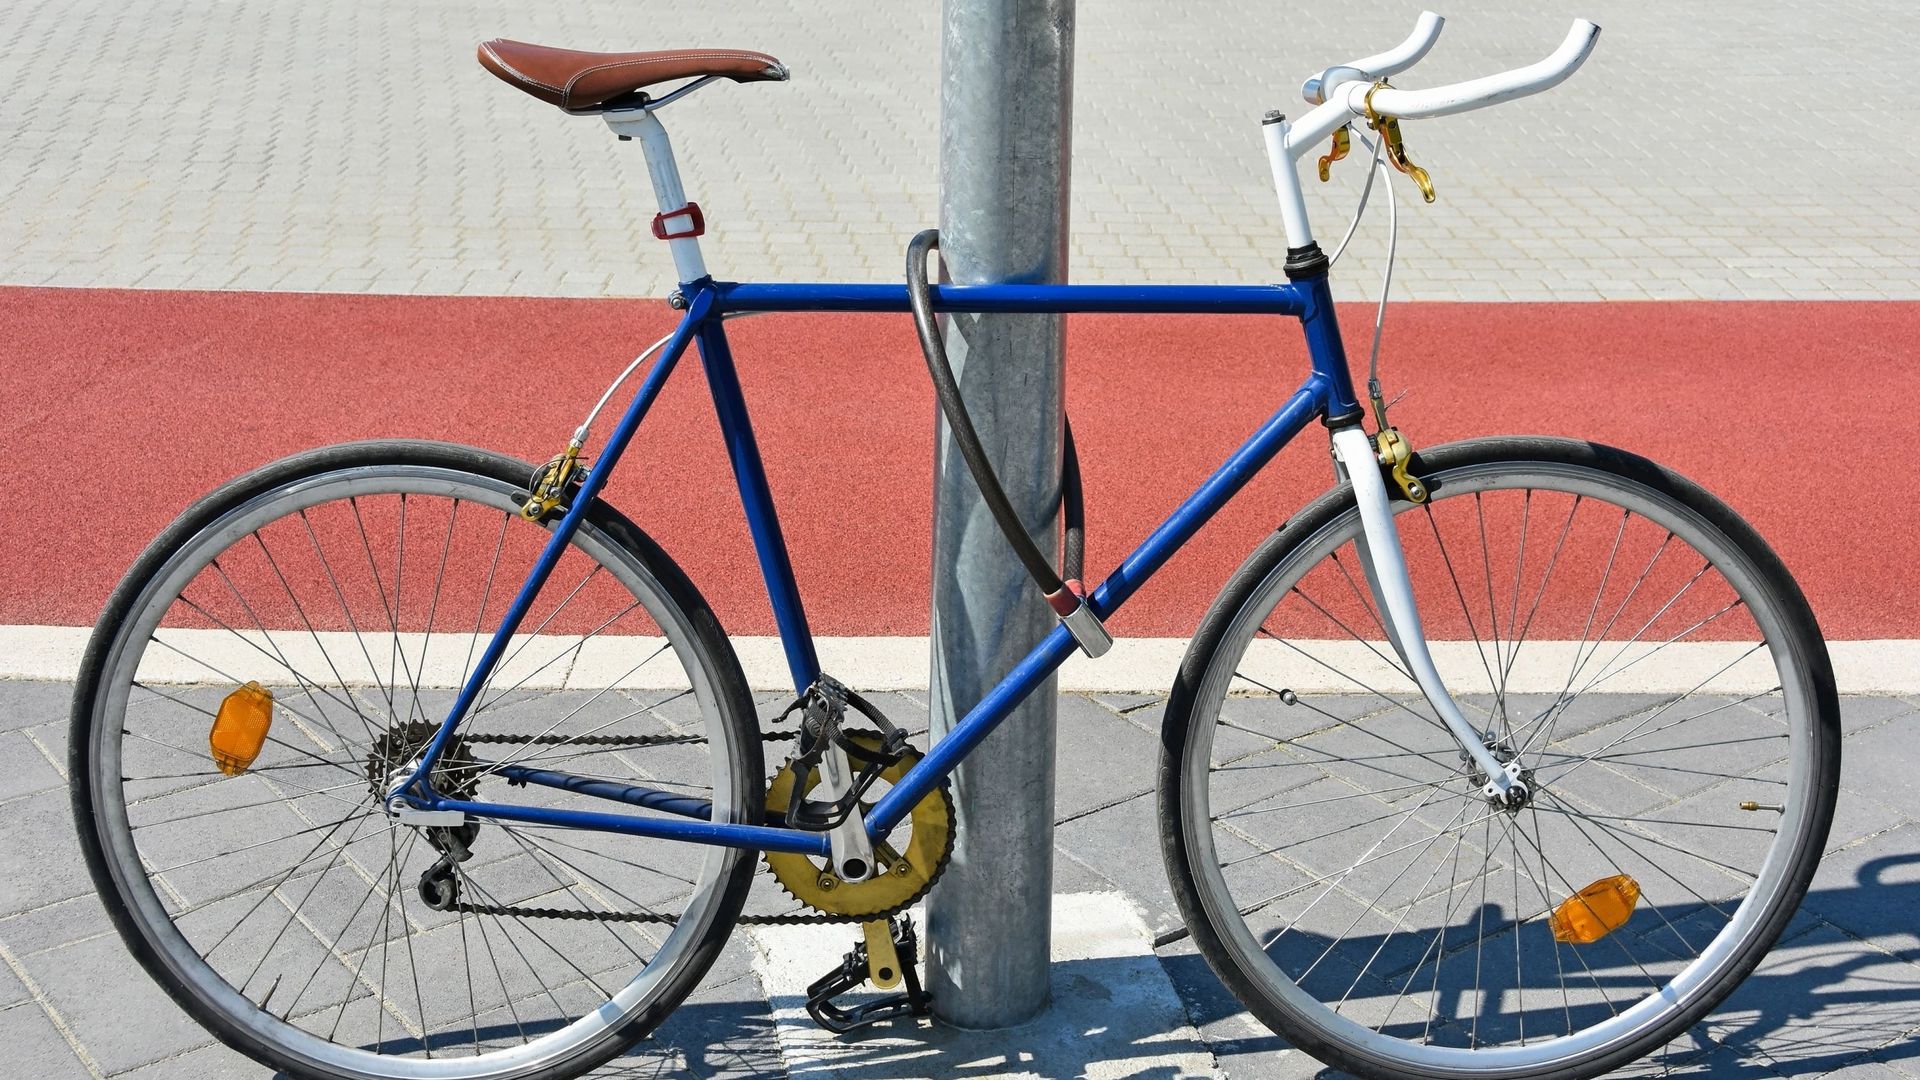 Un cycliste interpellé pour avoir attaché son vélo à un poteau : que dit le Code de la route ?